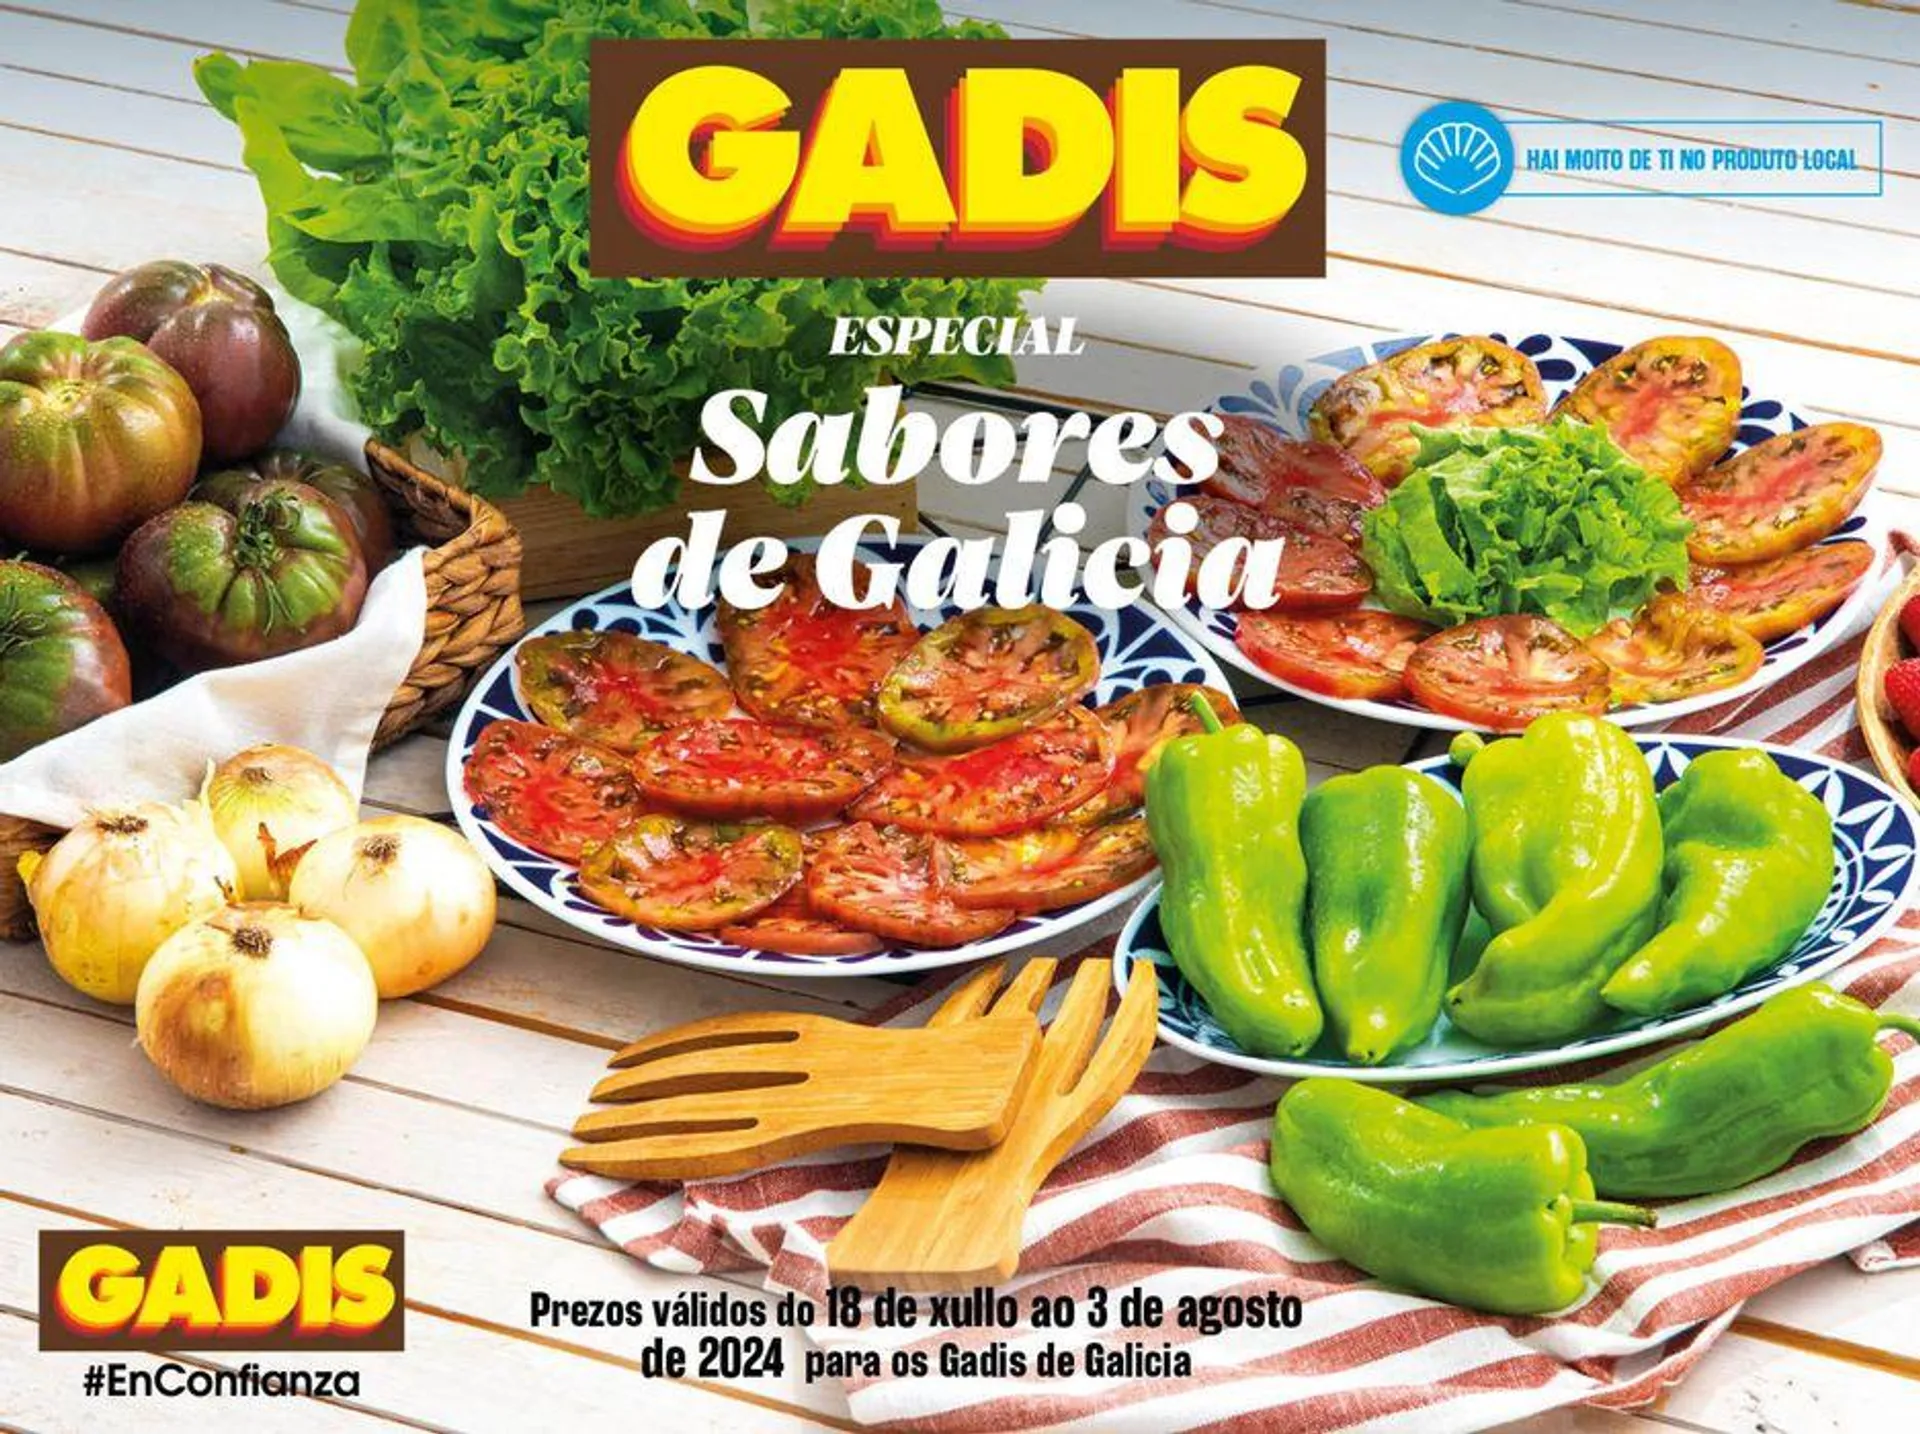 Prezos válidos do 18 de xullo ao 3 de agosto de 2024 para os Gadis de Galicia - 1